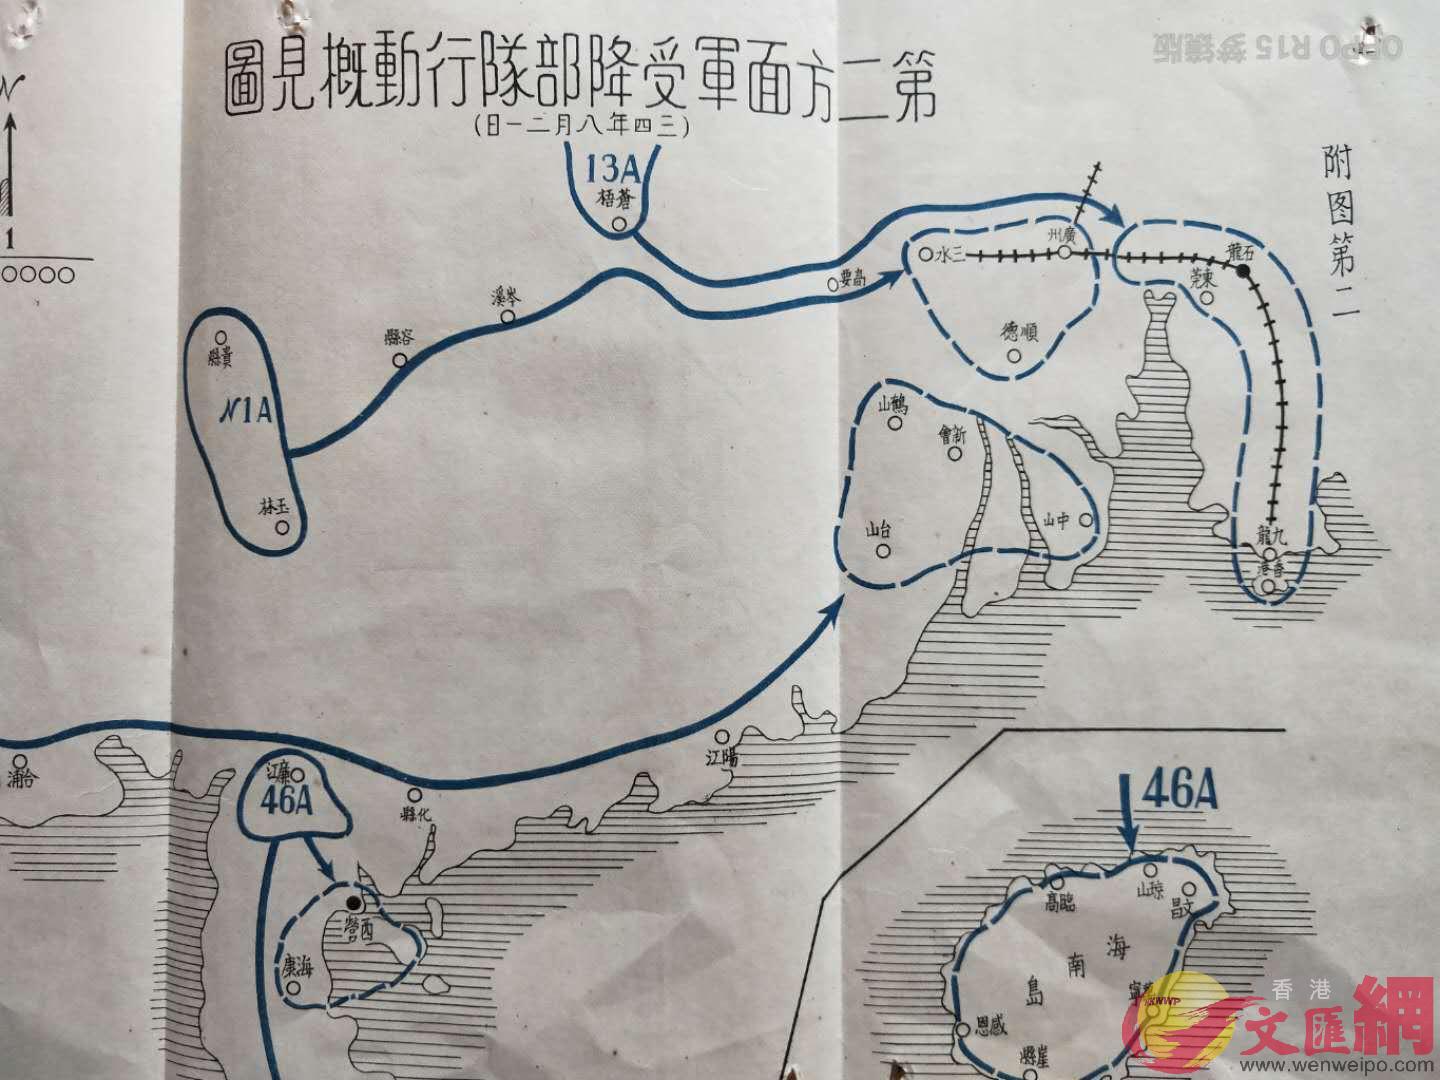 繪製於1945年u第二方面軍受降部隊行動概見圖v中可以看到A香港B九龍區域按規劃是由編號為13A的行動部隊南下接管C]香港文匯網記者 于珈琳 攝^ 